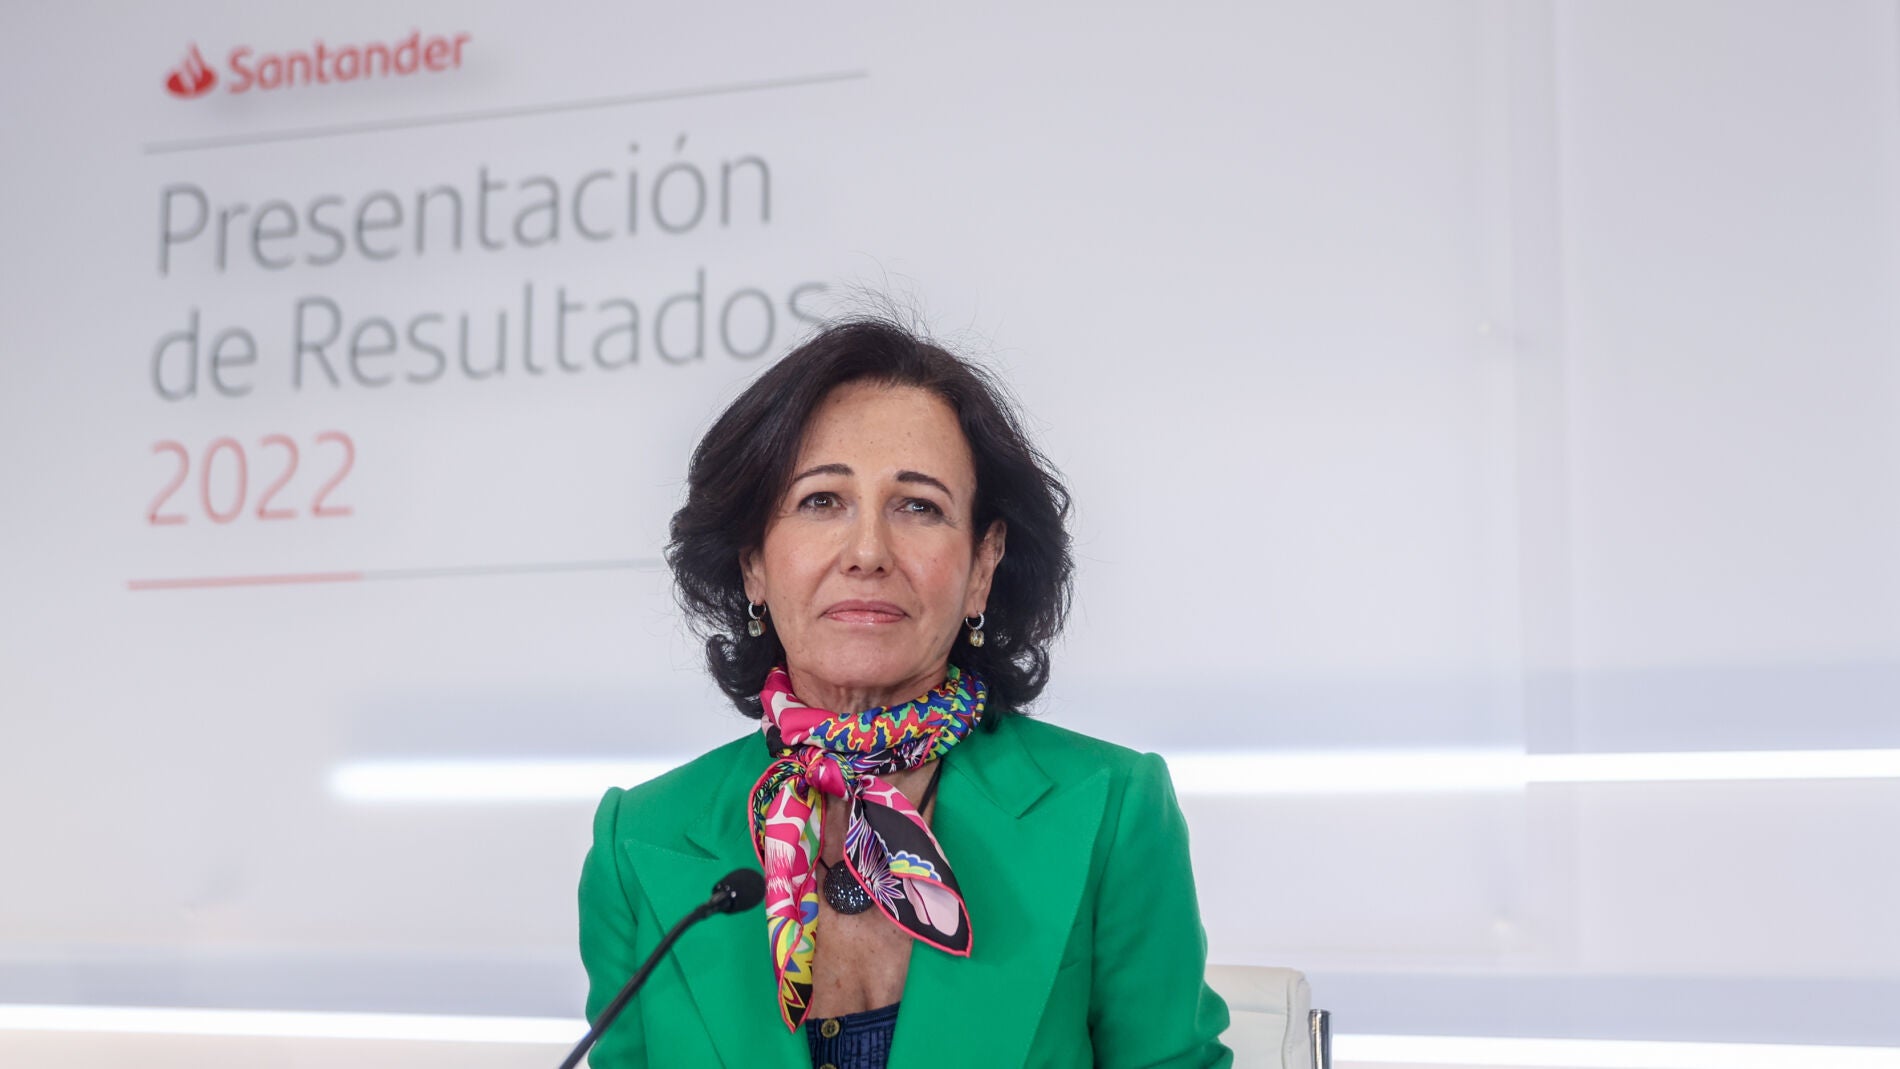 Comprar acciones del Santander [2023] Opiniones ¿Invertir o no? – Mejor Broker de Bolsa